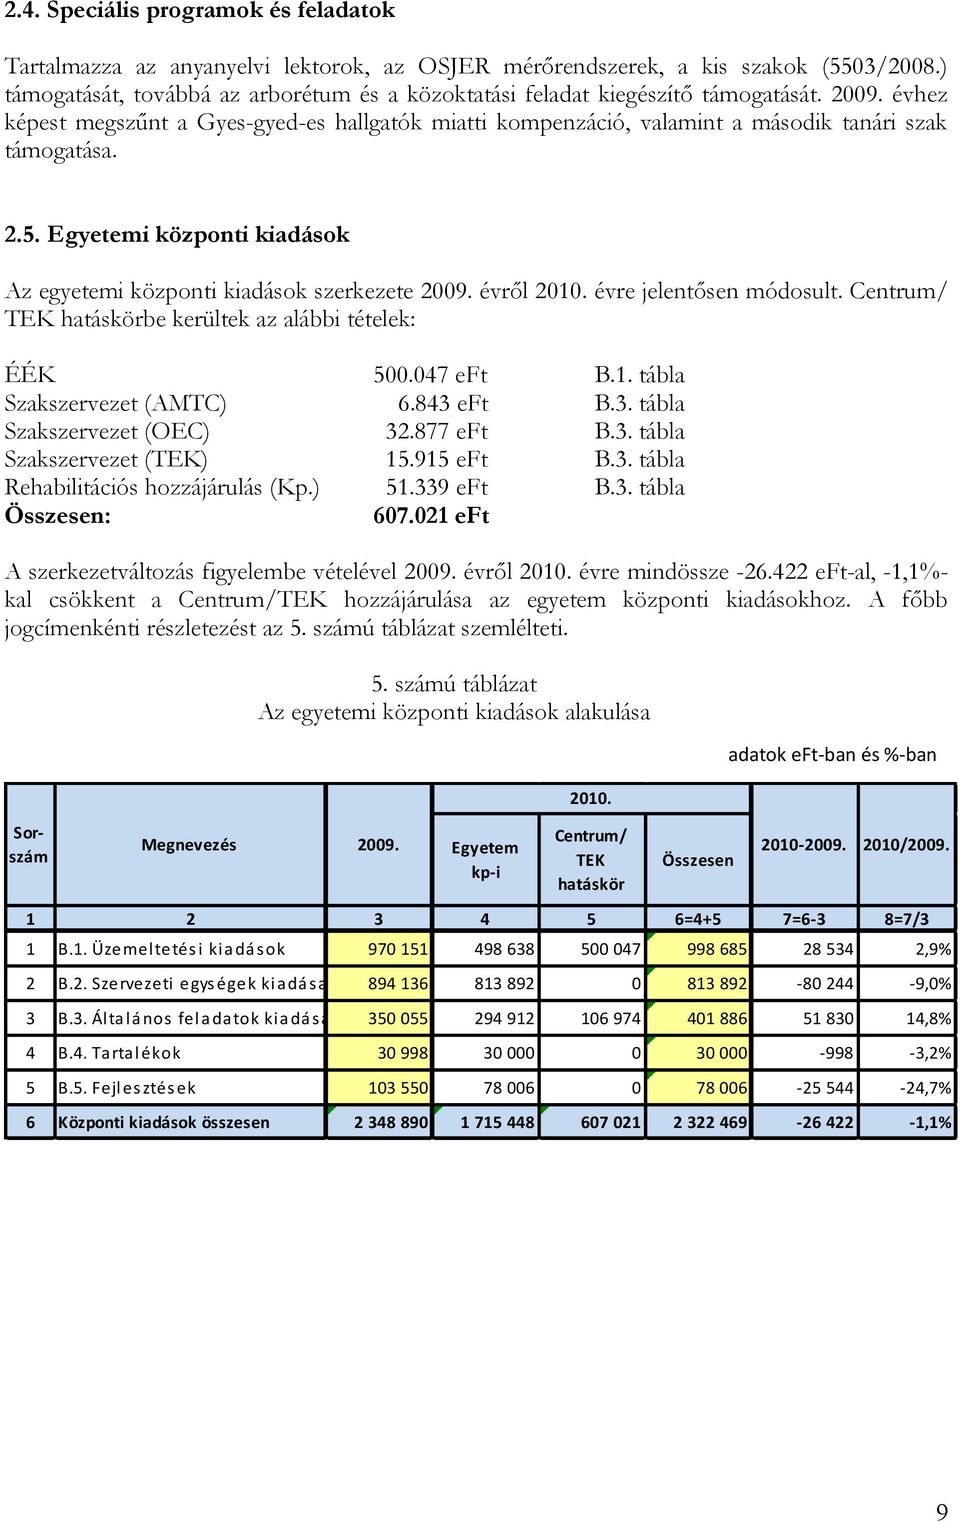 2.5. Egyetemi központi kiadások Az egyetemi központi kiadások szerkezete 2009. évről 2010. évre jelentősen módosult. Centrum/ TEK hatáskörbe kerültek az alábbi tételek: ÉÉK 500.047 eft B.1. tábla Szakszervezet (AMTC) 6.